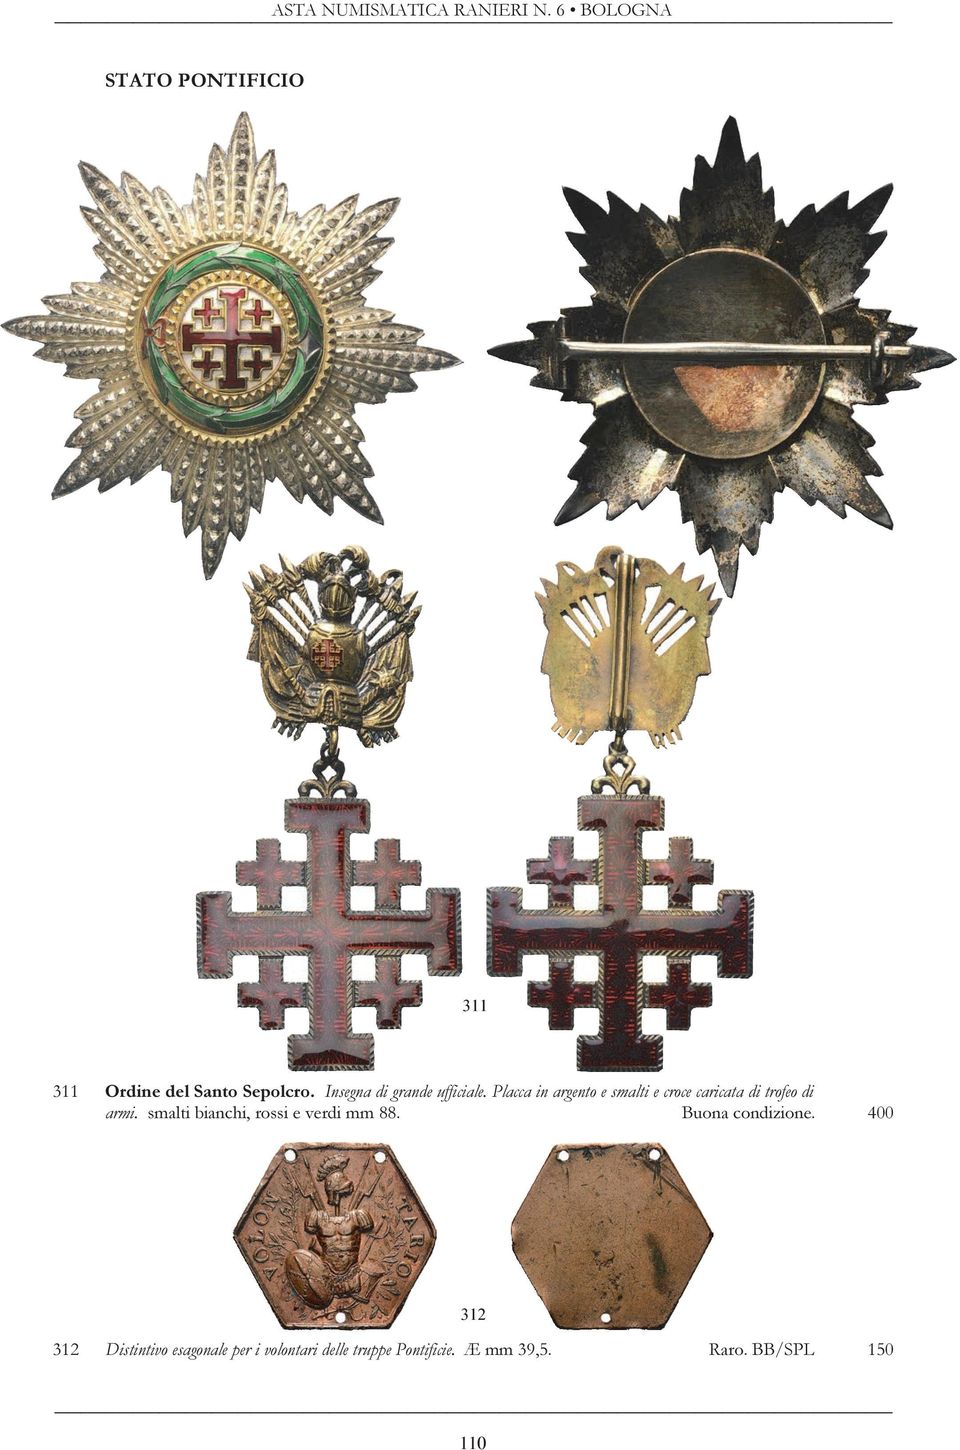 Placca in argento e smalti e croce caricata di trofeo di armi.